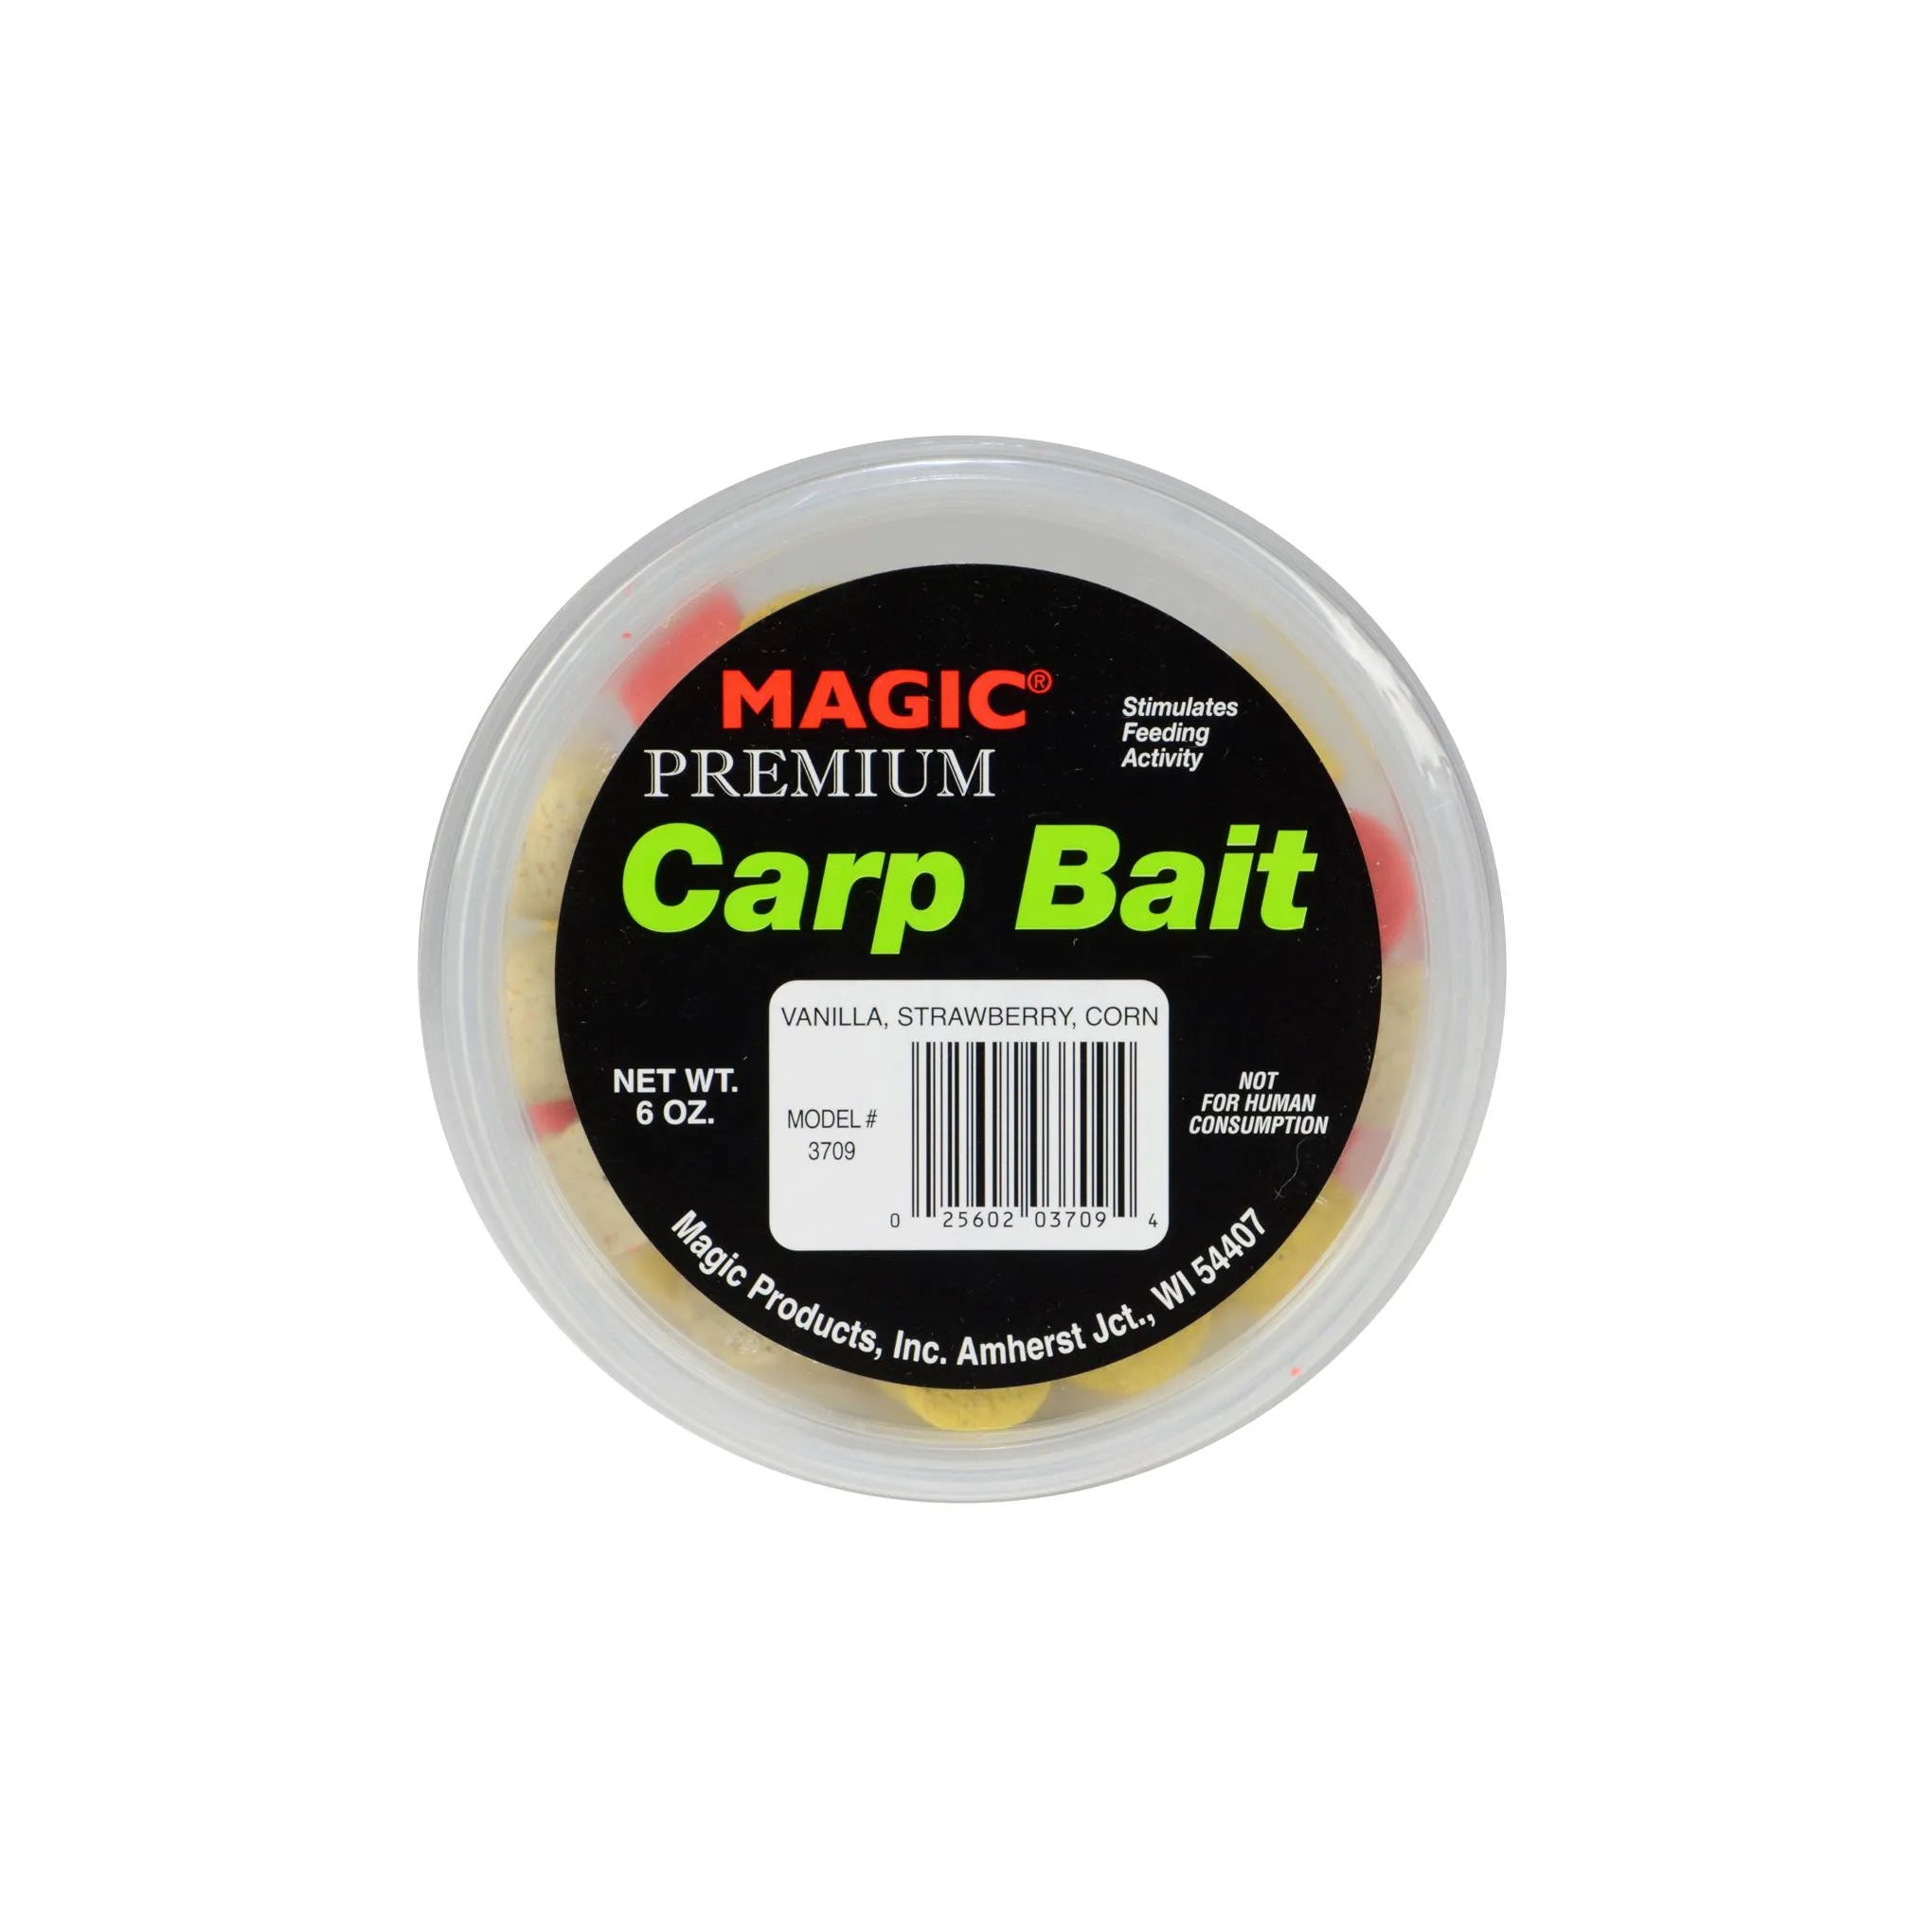 Magic Premium Carp Bait – Outdoor America